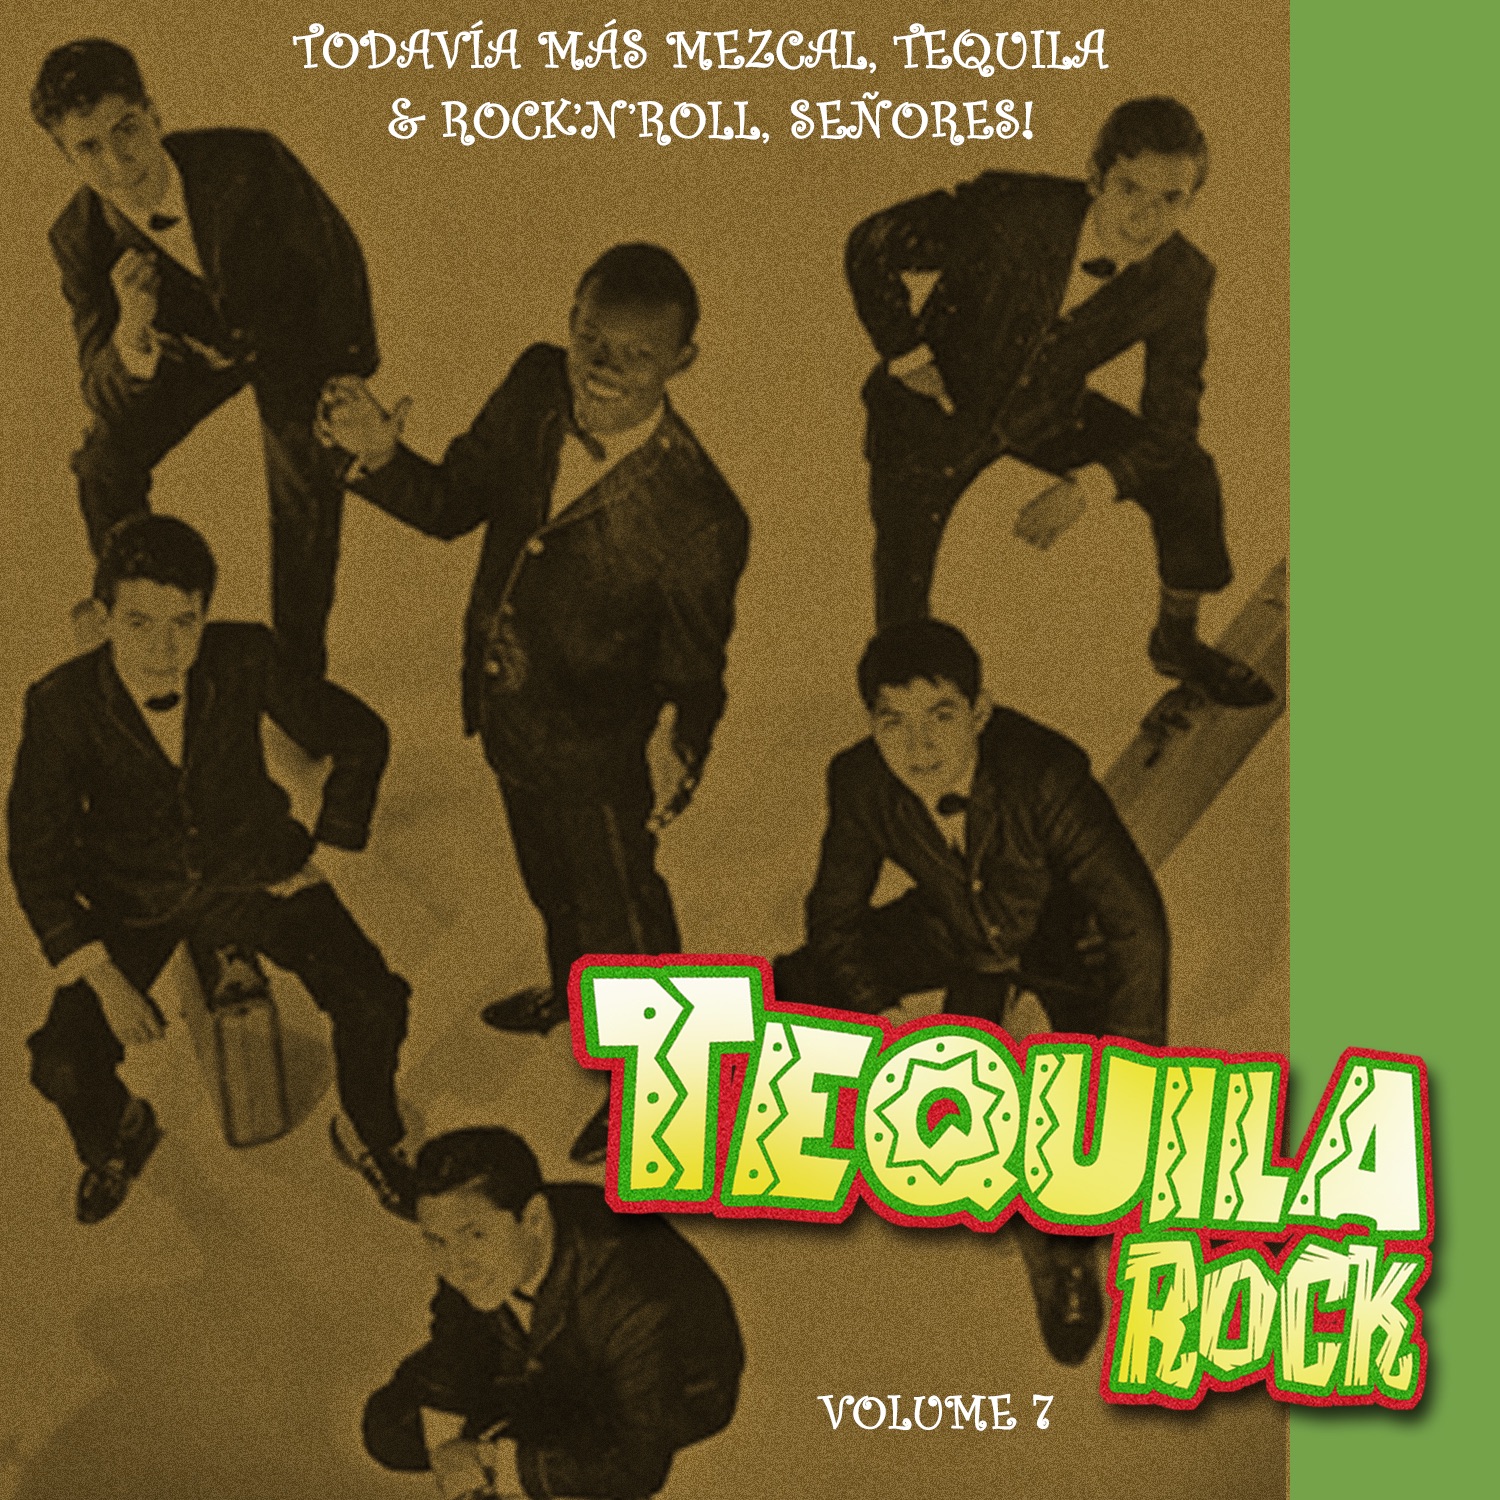 Los Rebeldes Del Rock And Roll [1959]